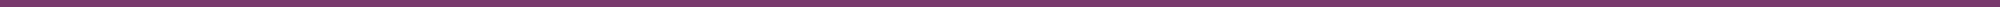 PurpleLine1